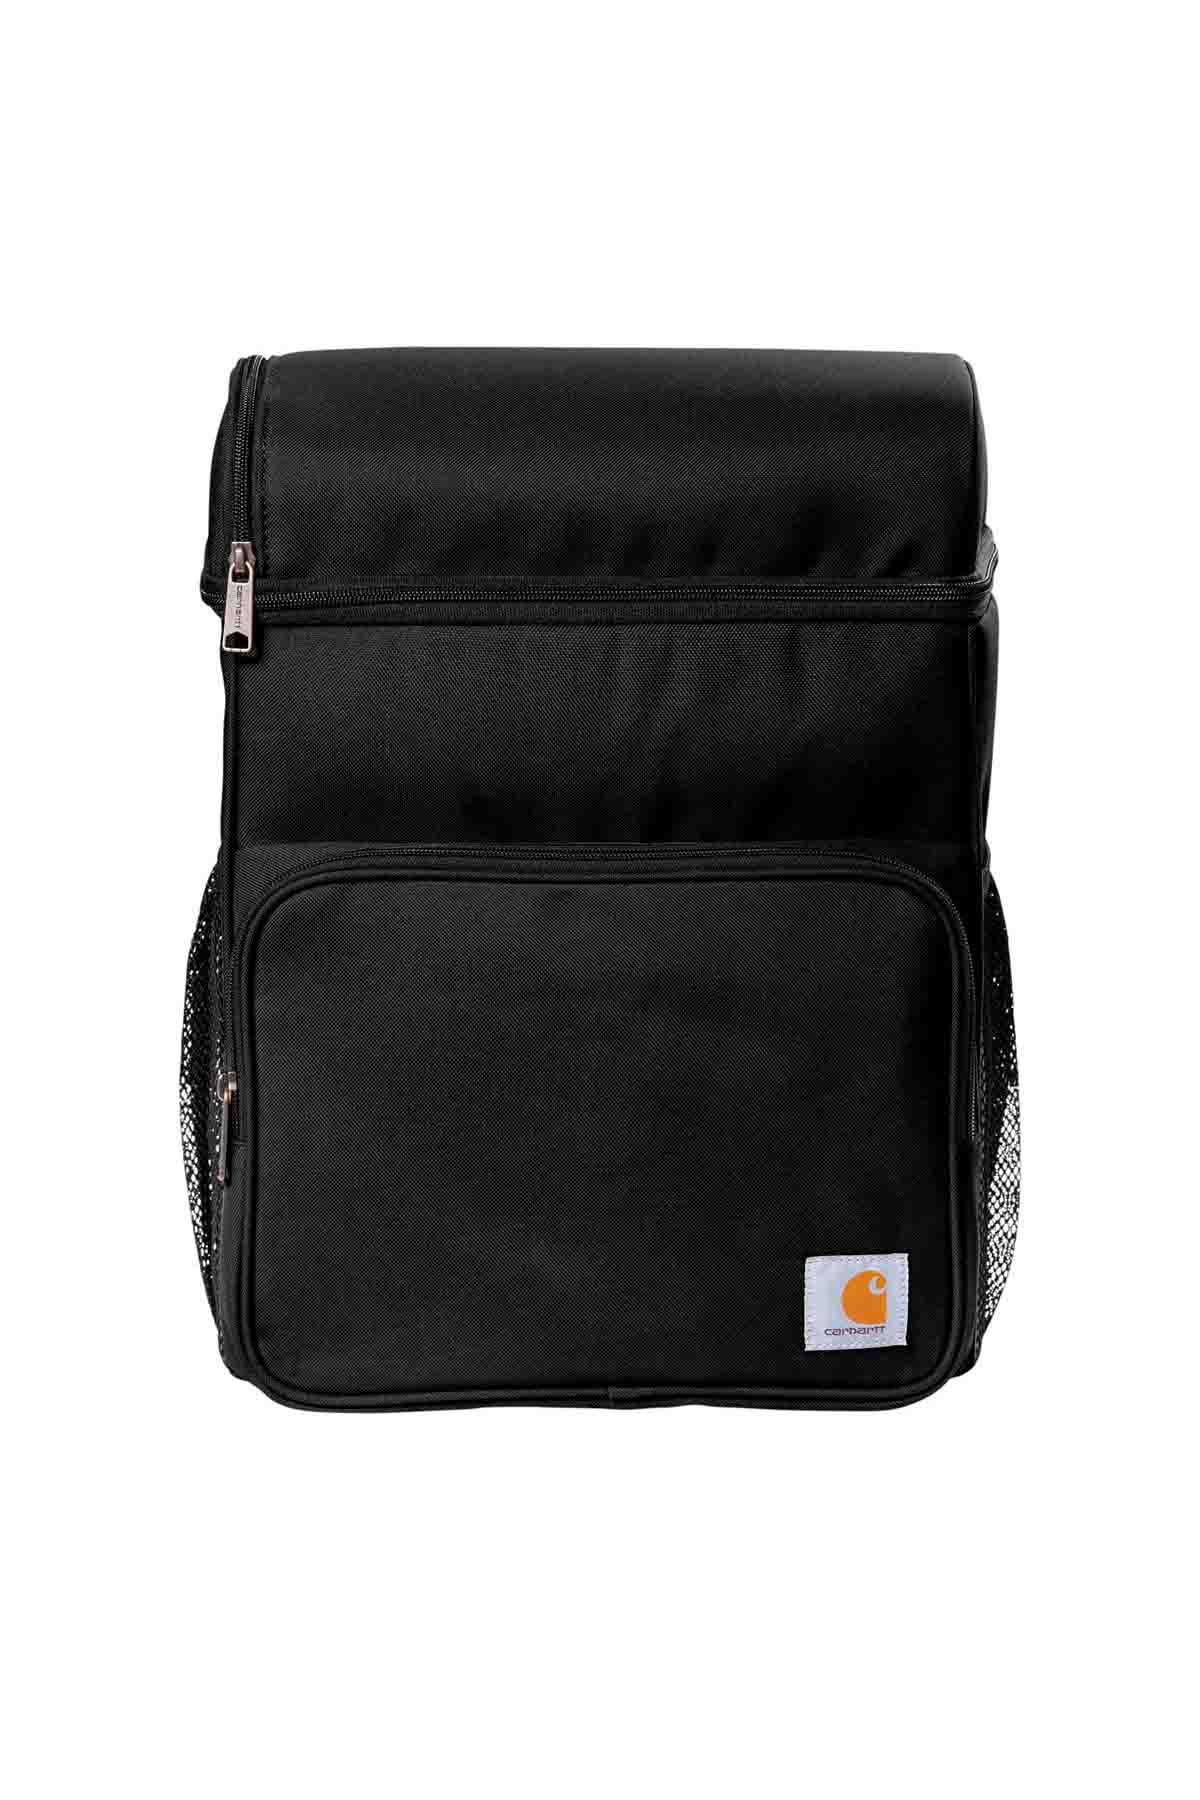 Carhartt® Backpack 20-Can Cooler – THE DUCKHORN SHOP